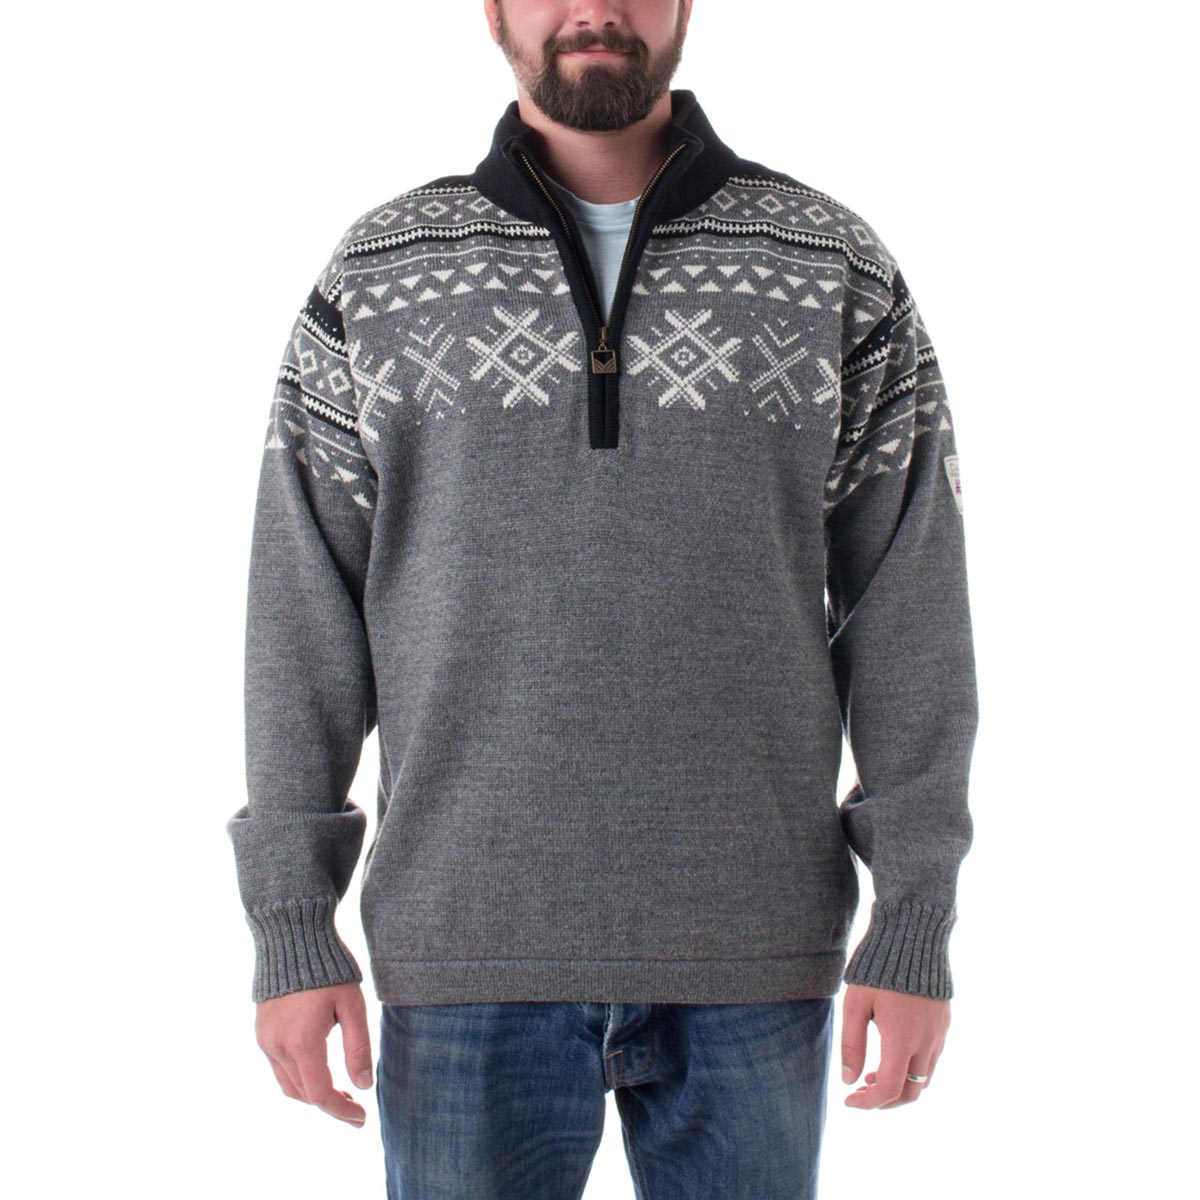 Dale of Norway Men's Dovre Sweater Quarter Zip